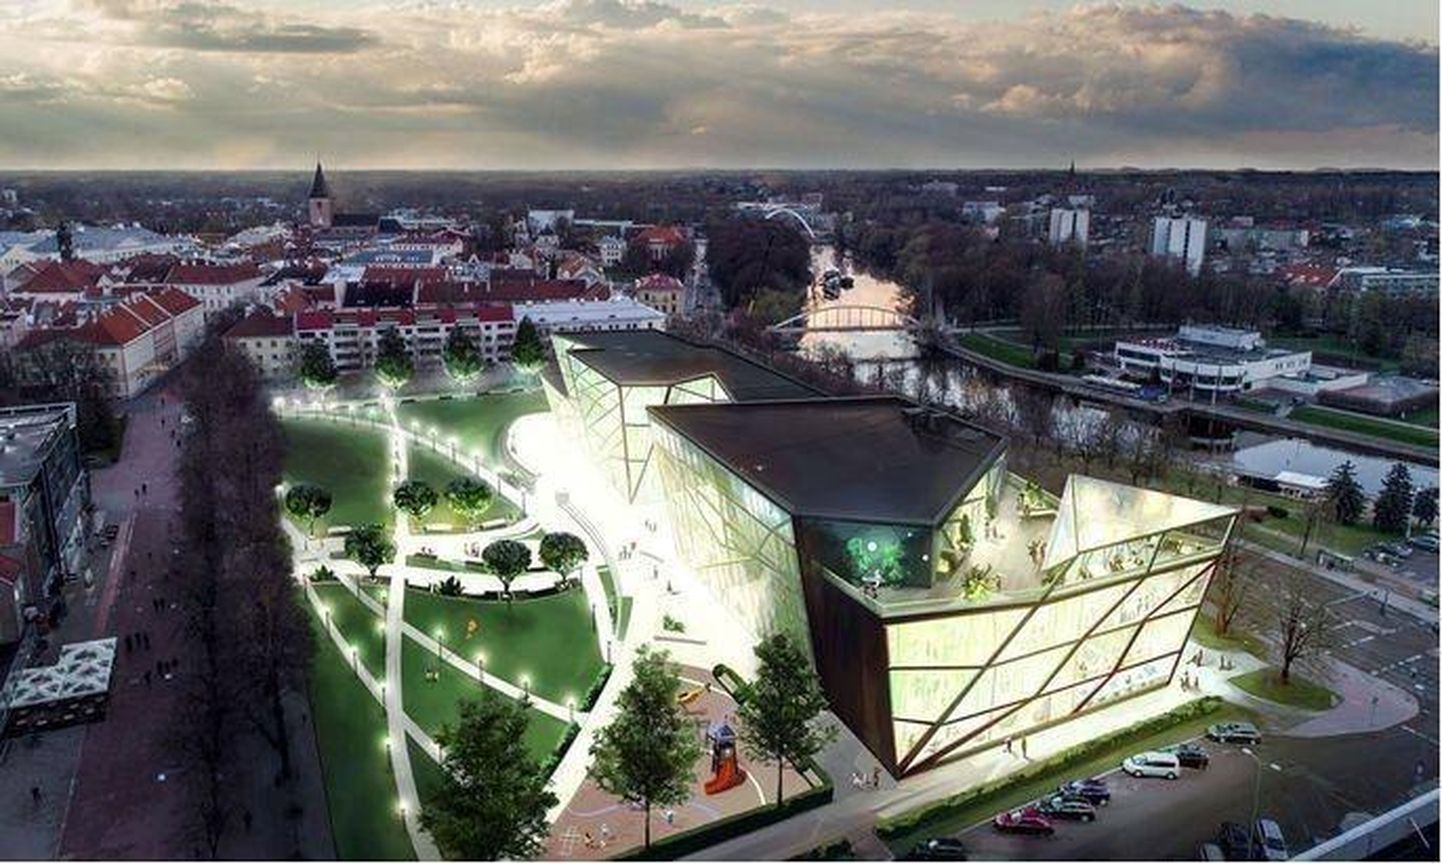 С помощью этой картинки находящиеся в Тарту у власти реформисты представили идею культурного центра в ходе предвыборной кампании 2017 года.